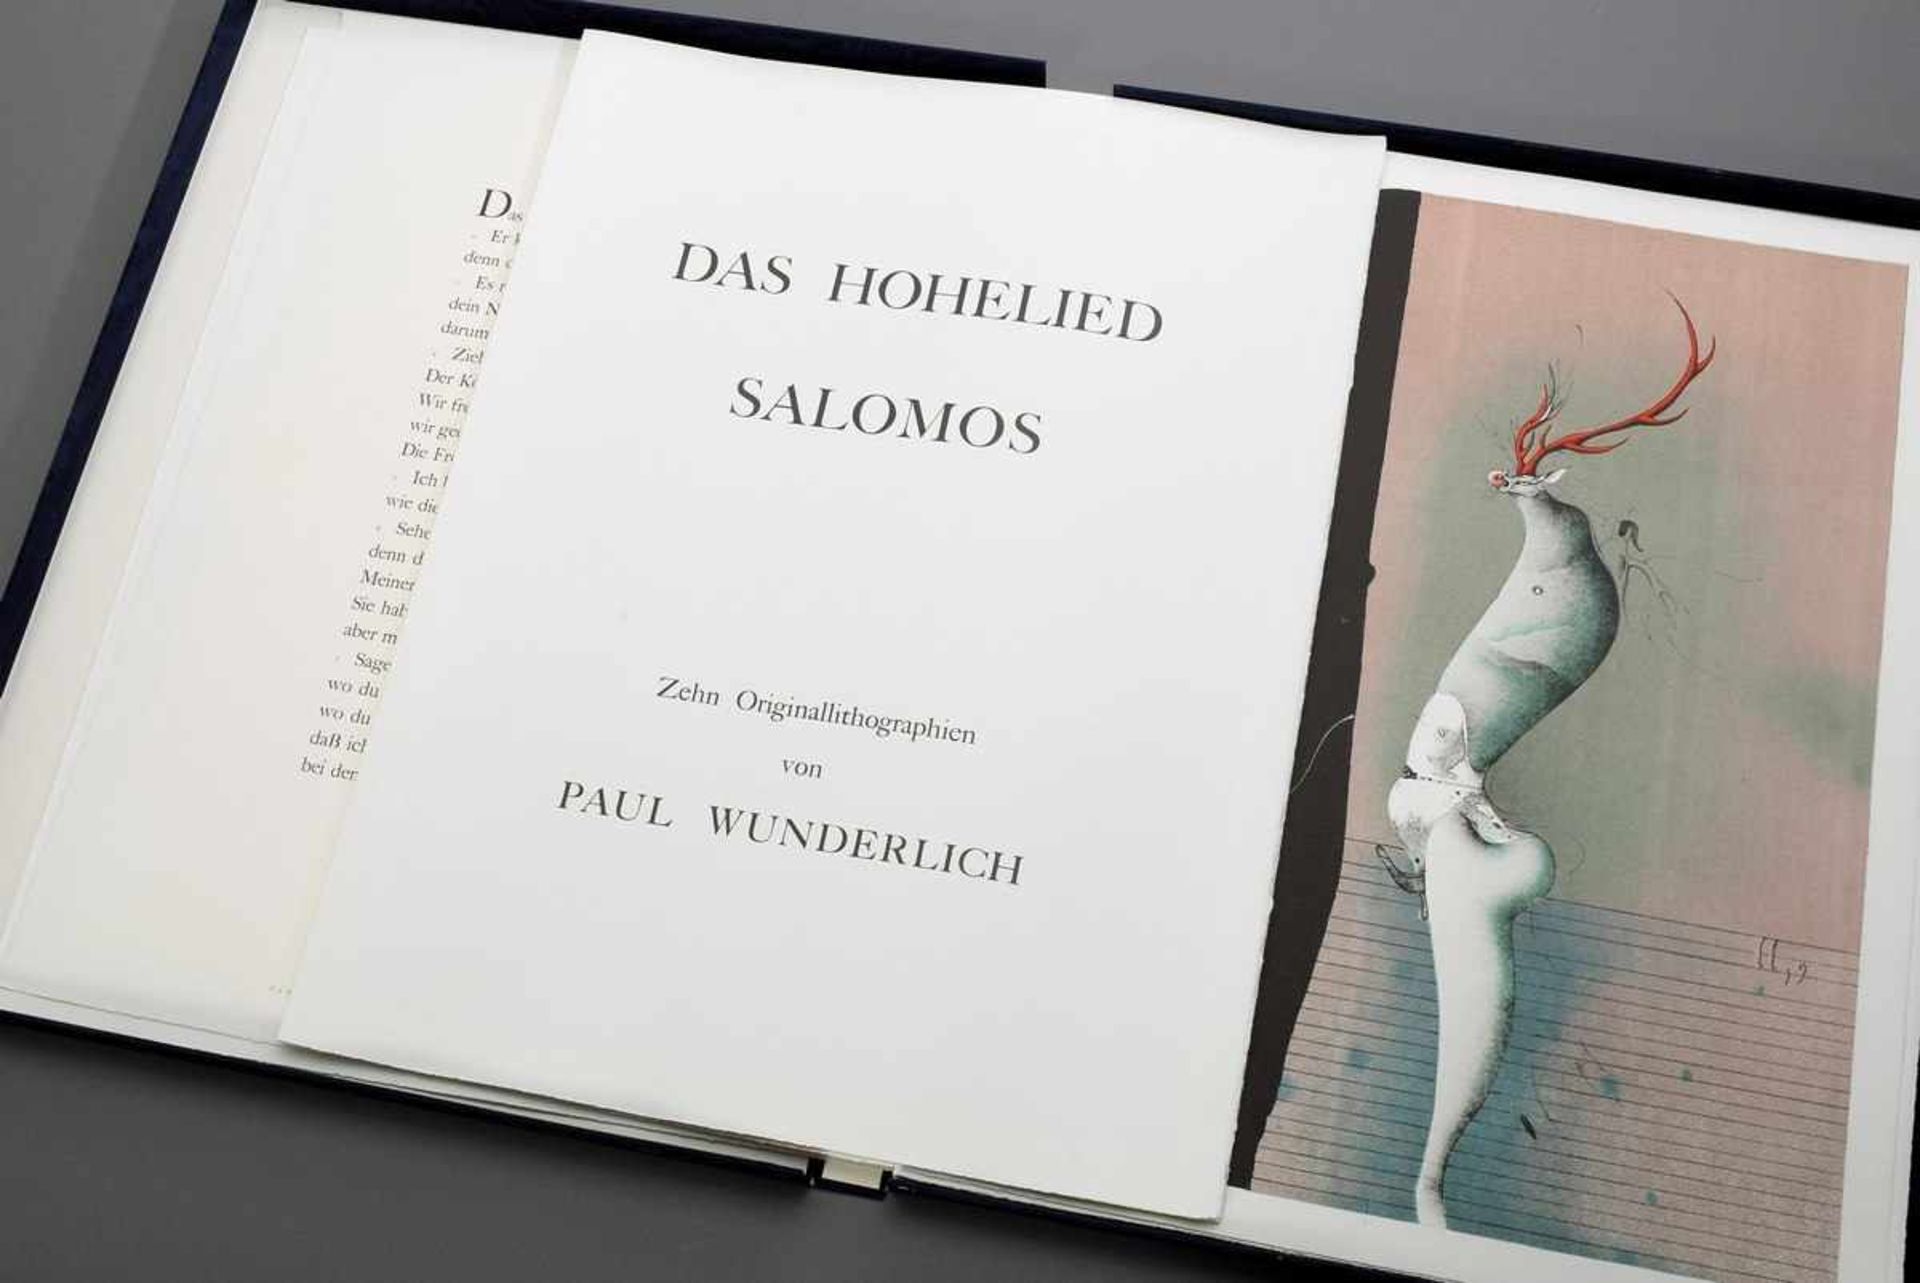 Wunderlich, Paul (1927-2010) Mappe "Das Hohe Lied Salomon" mit 10 Lithographien, 1970, 33/480,